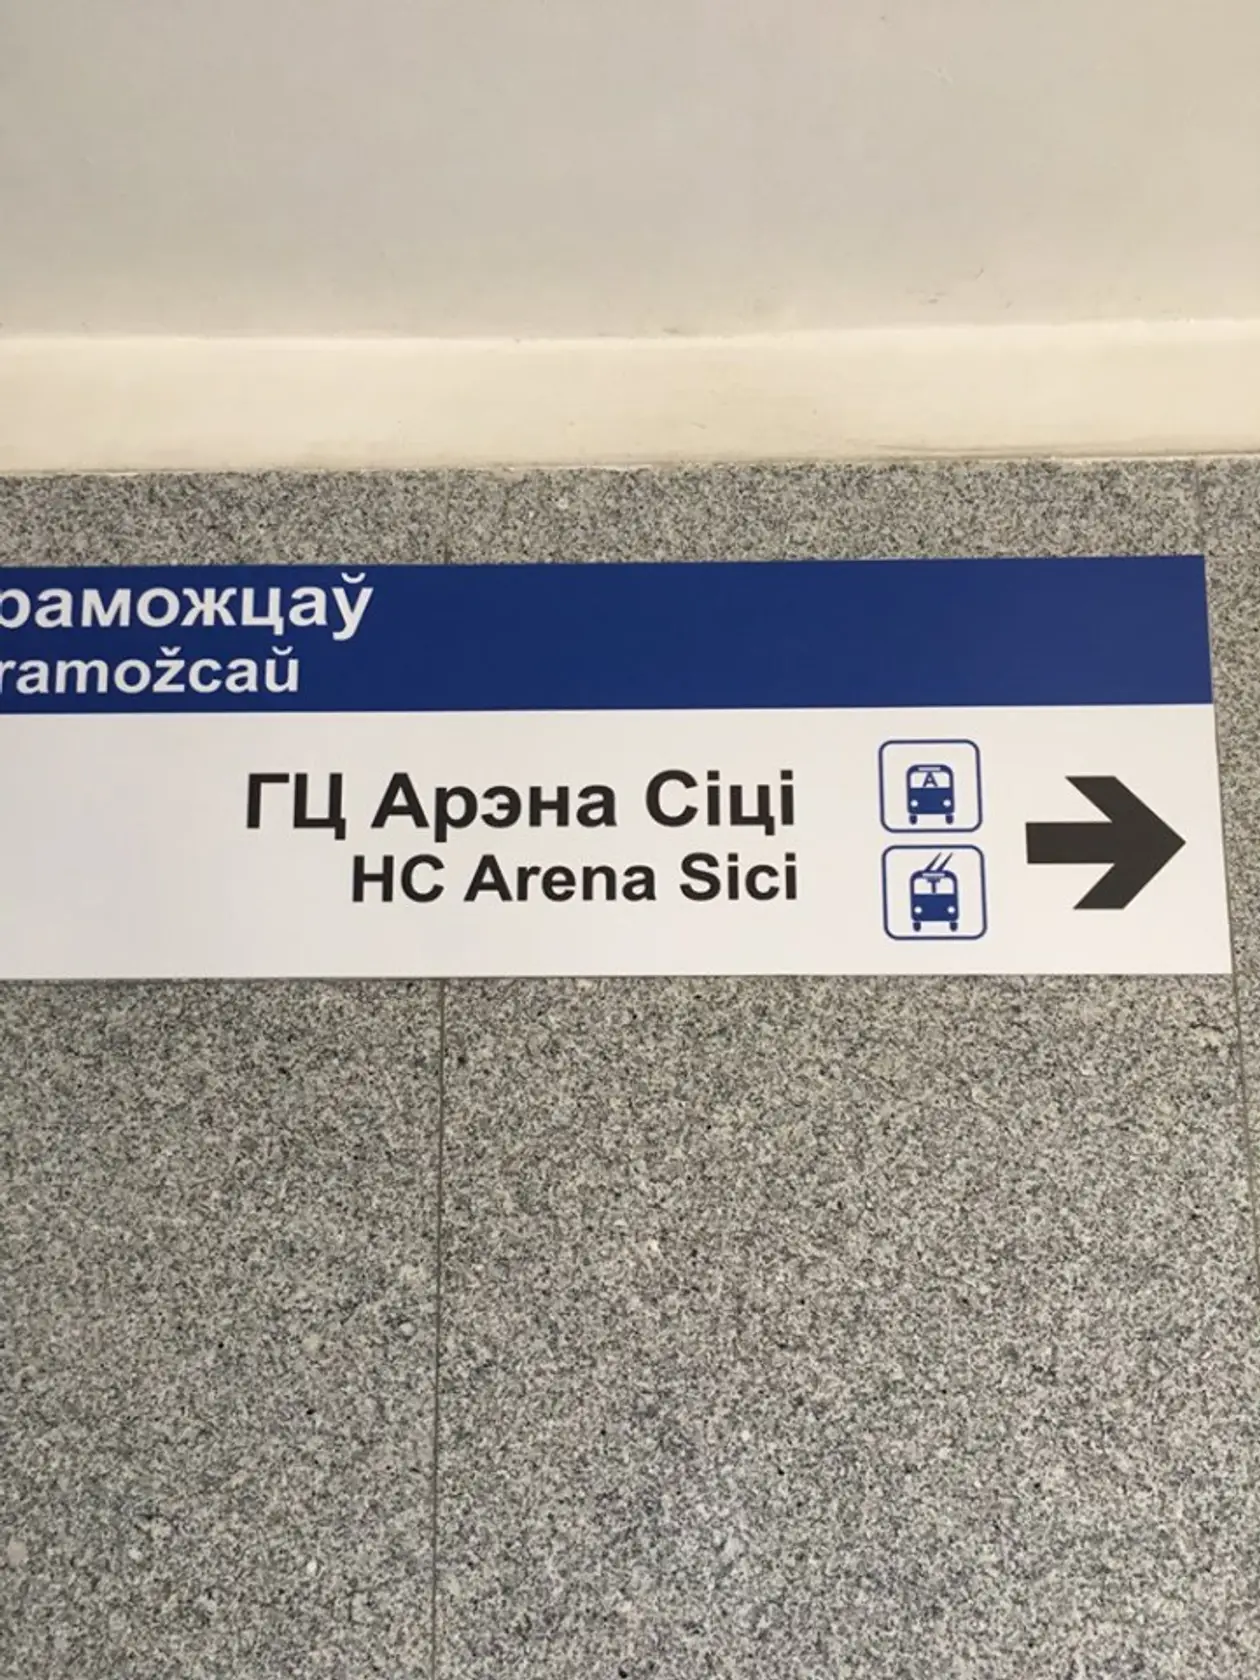 «HC Arena Sici». В Минске сделали транслитерацию станций метро и указателей – получилось максимально глупо